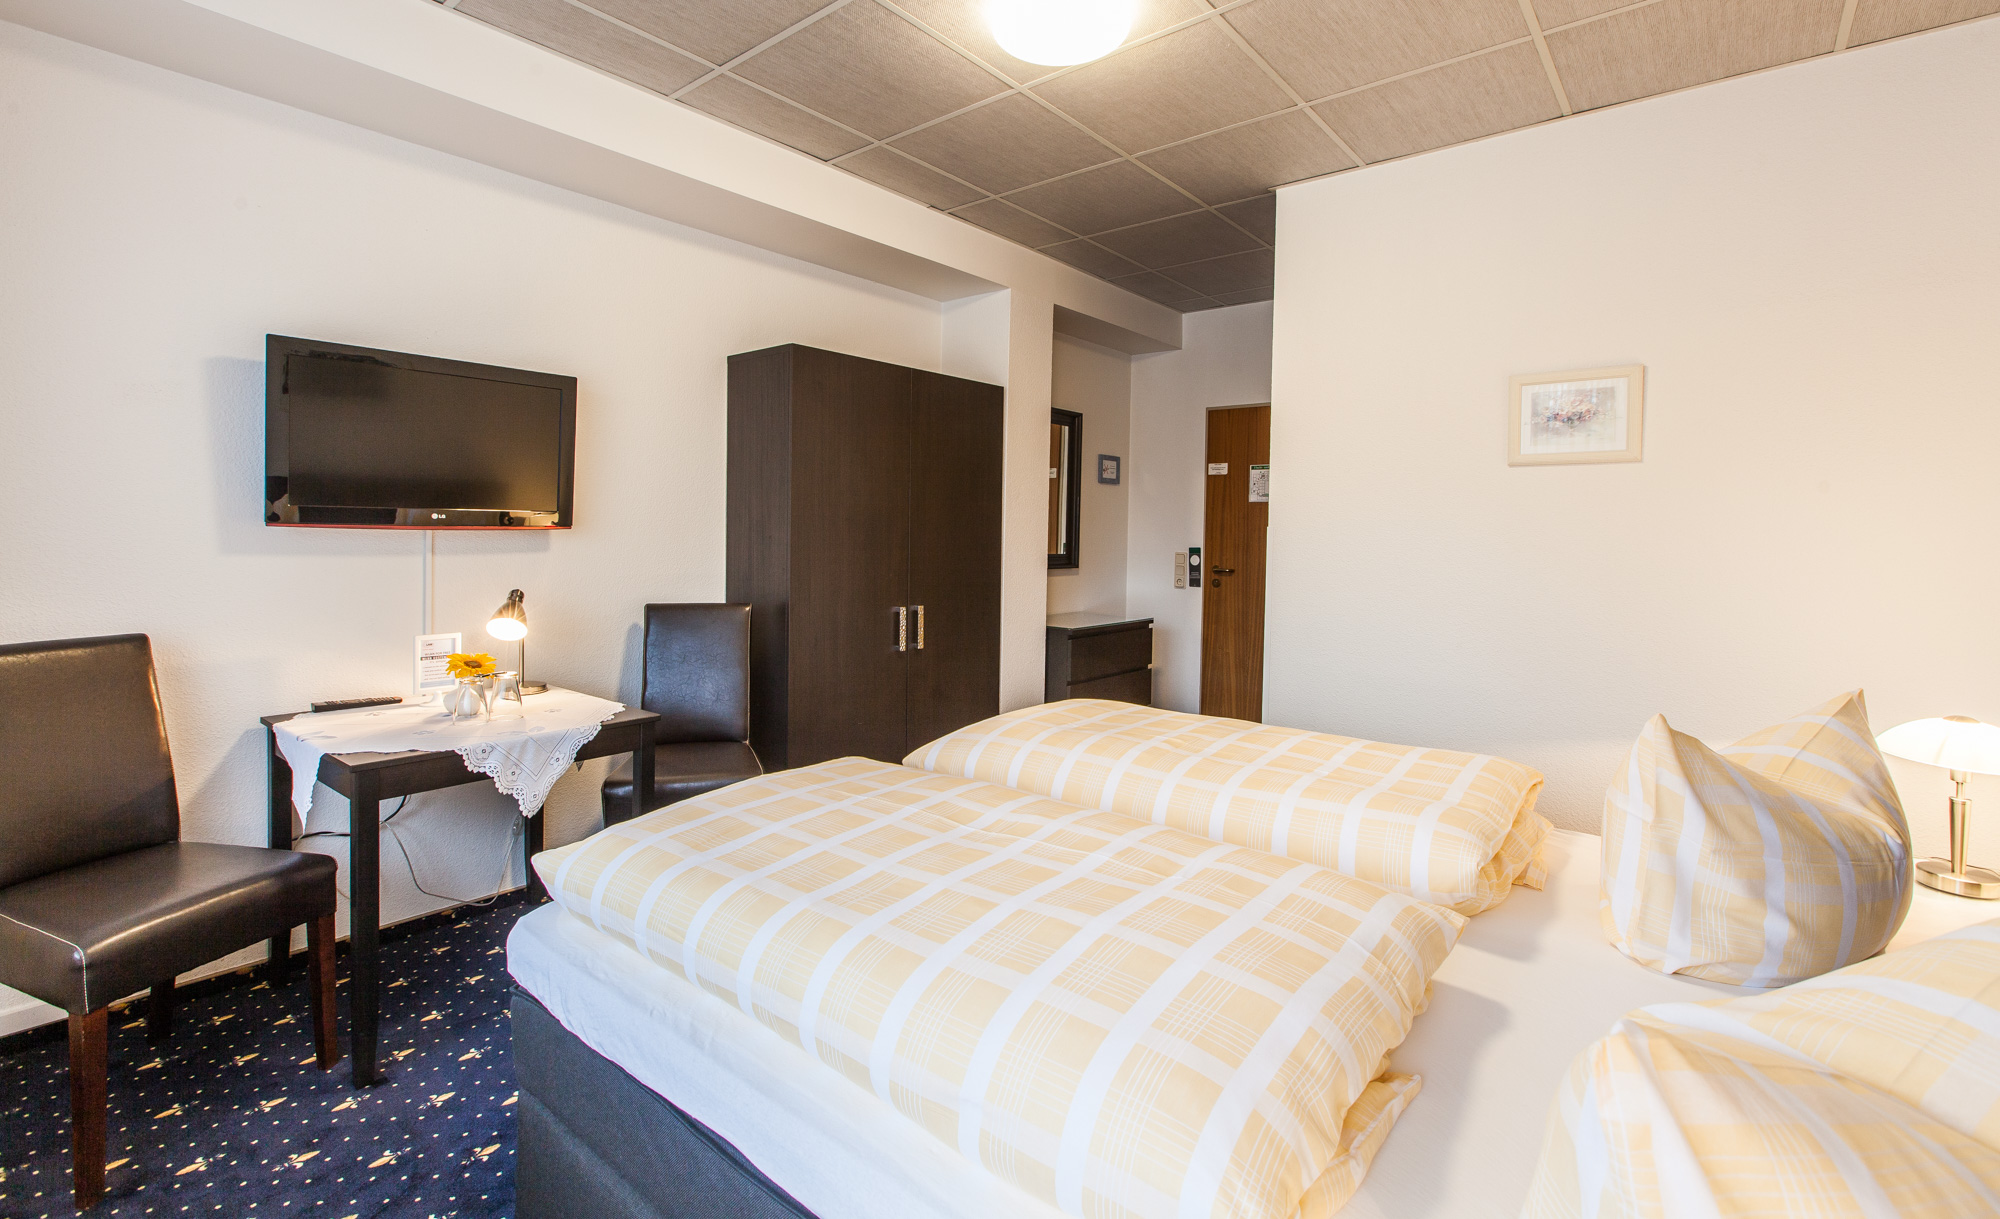 Doppelzimmer im Hotel Quellental in Pinneberg bei Hamburg